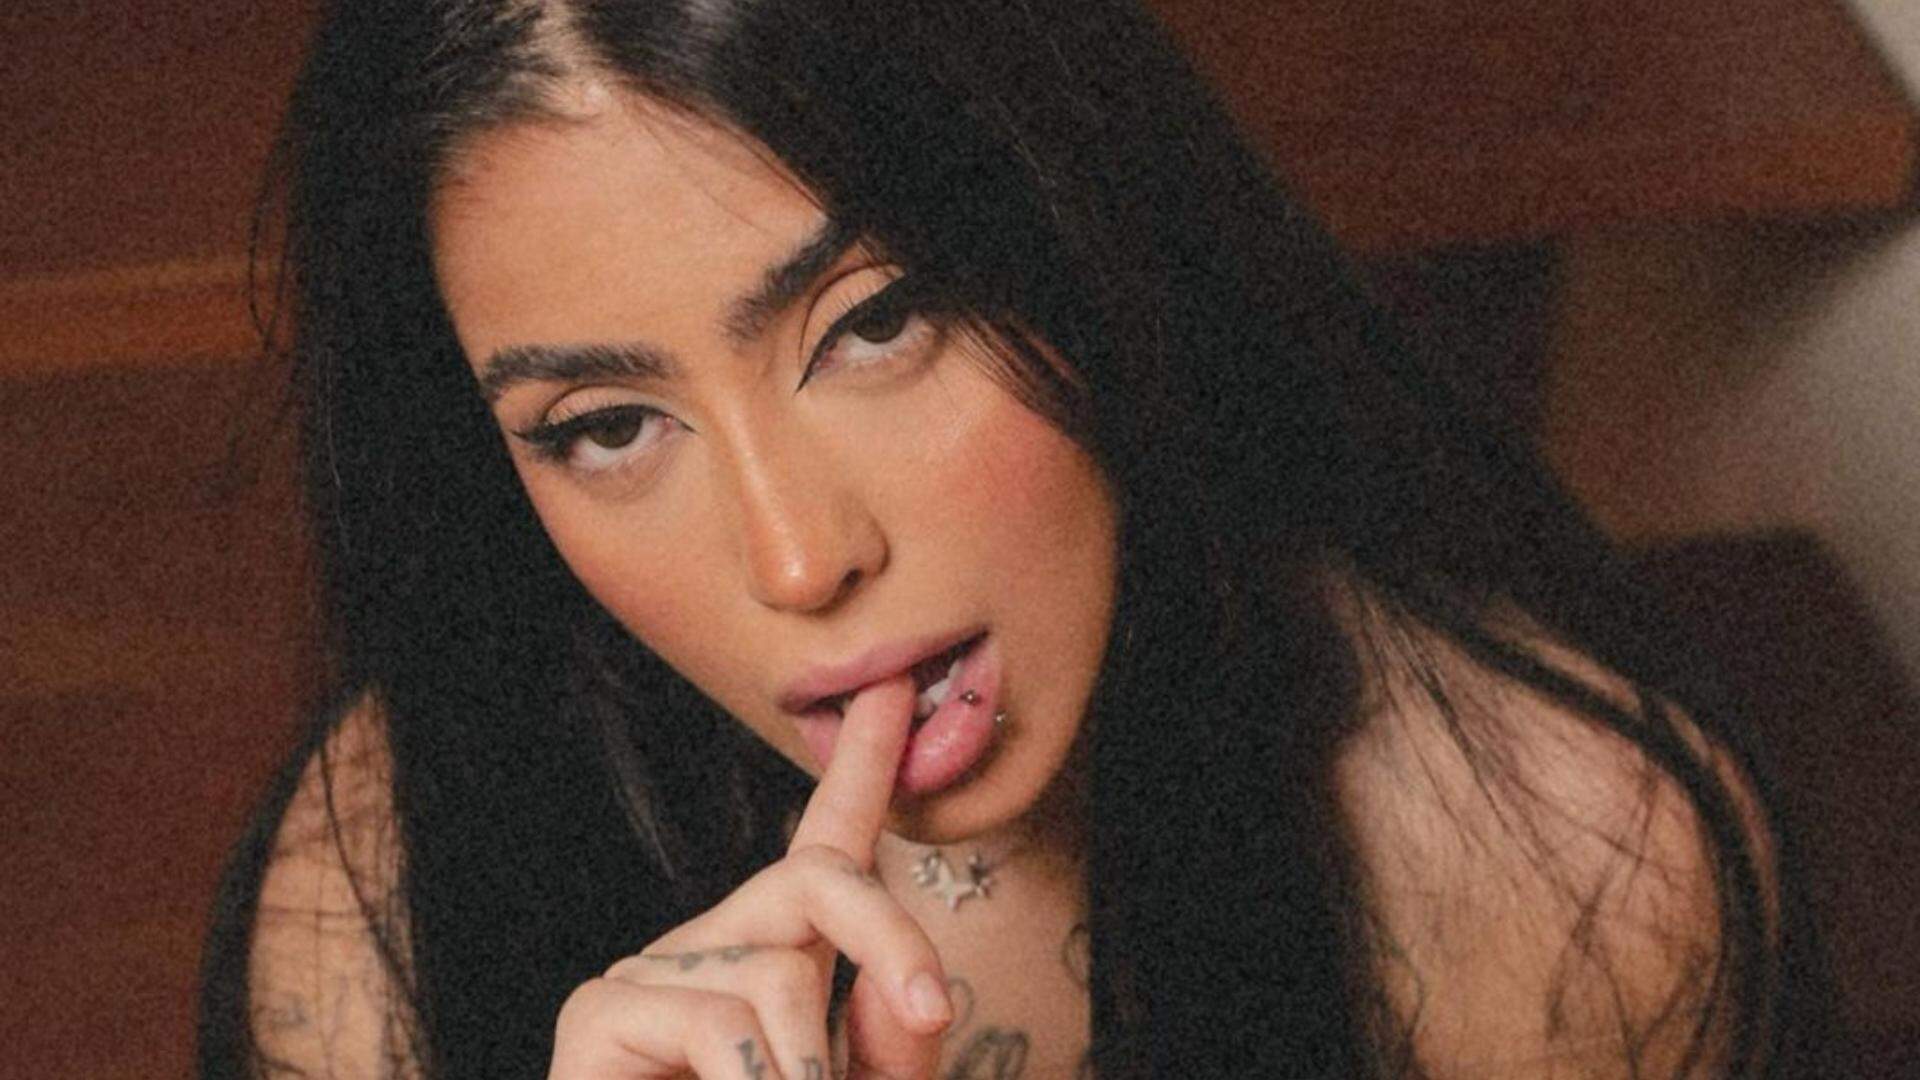 Mirella é clicada com lingerie transparente e esconde sua parte mais íntima: “Deu ruim” - Metropolitana FM